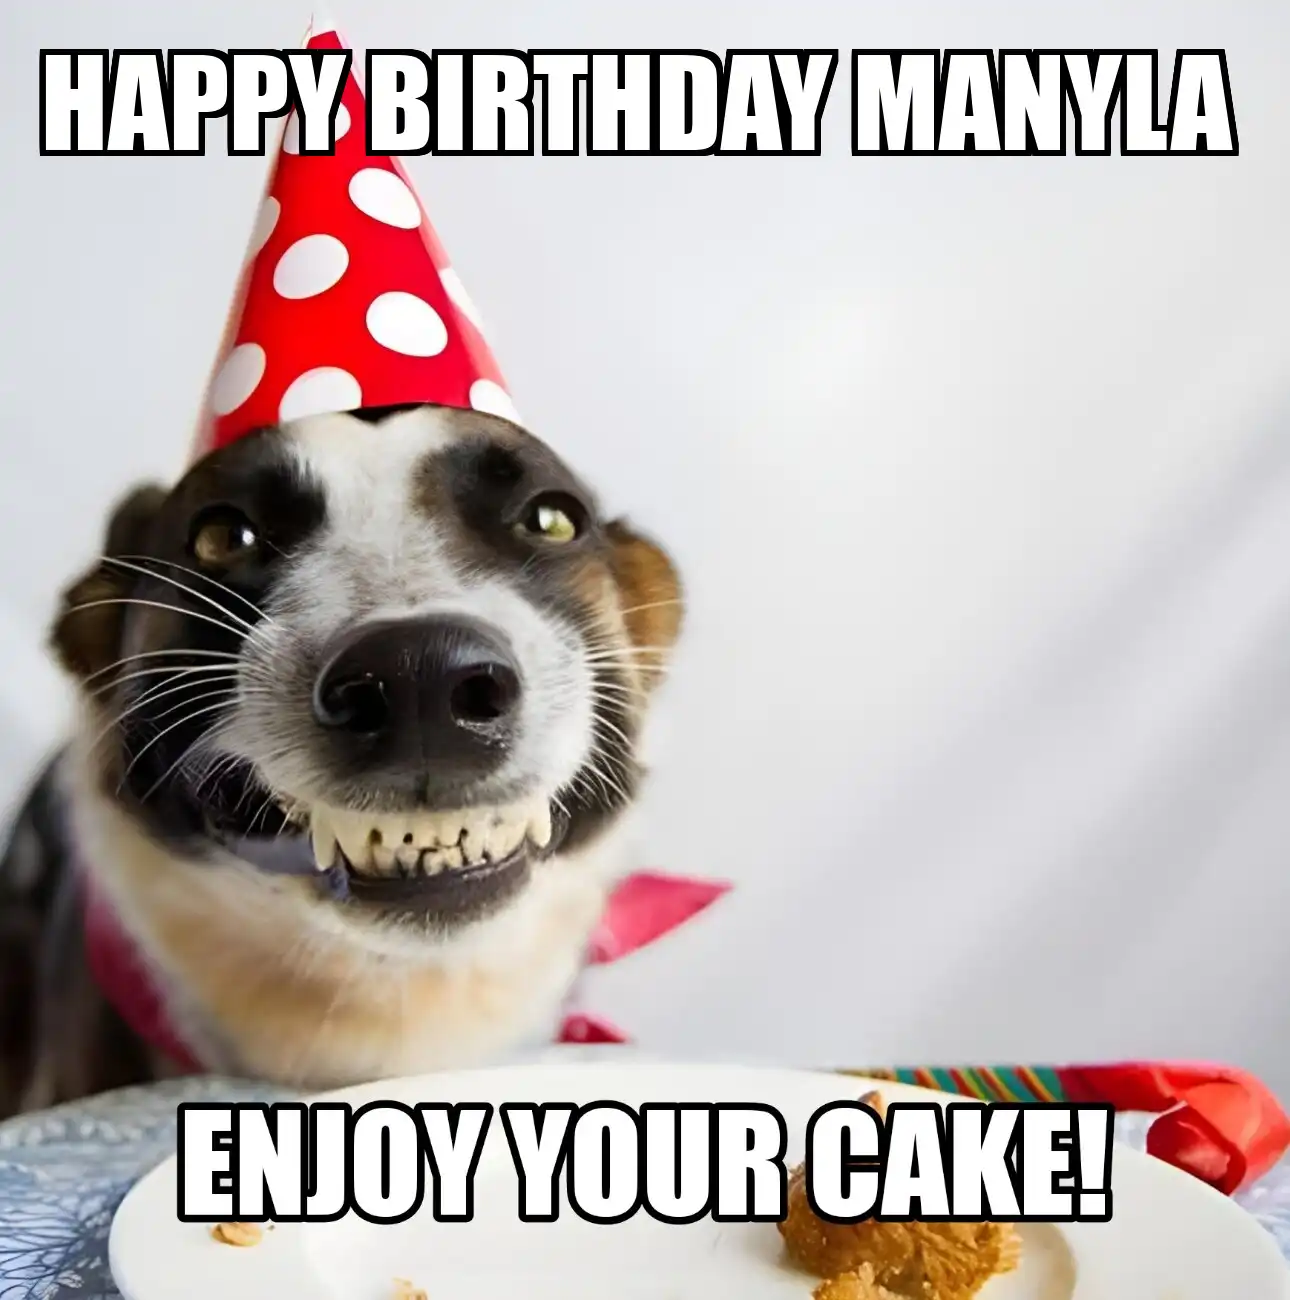 Happy Birthday Manyla Enjoy Your Cake Dog Meme